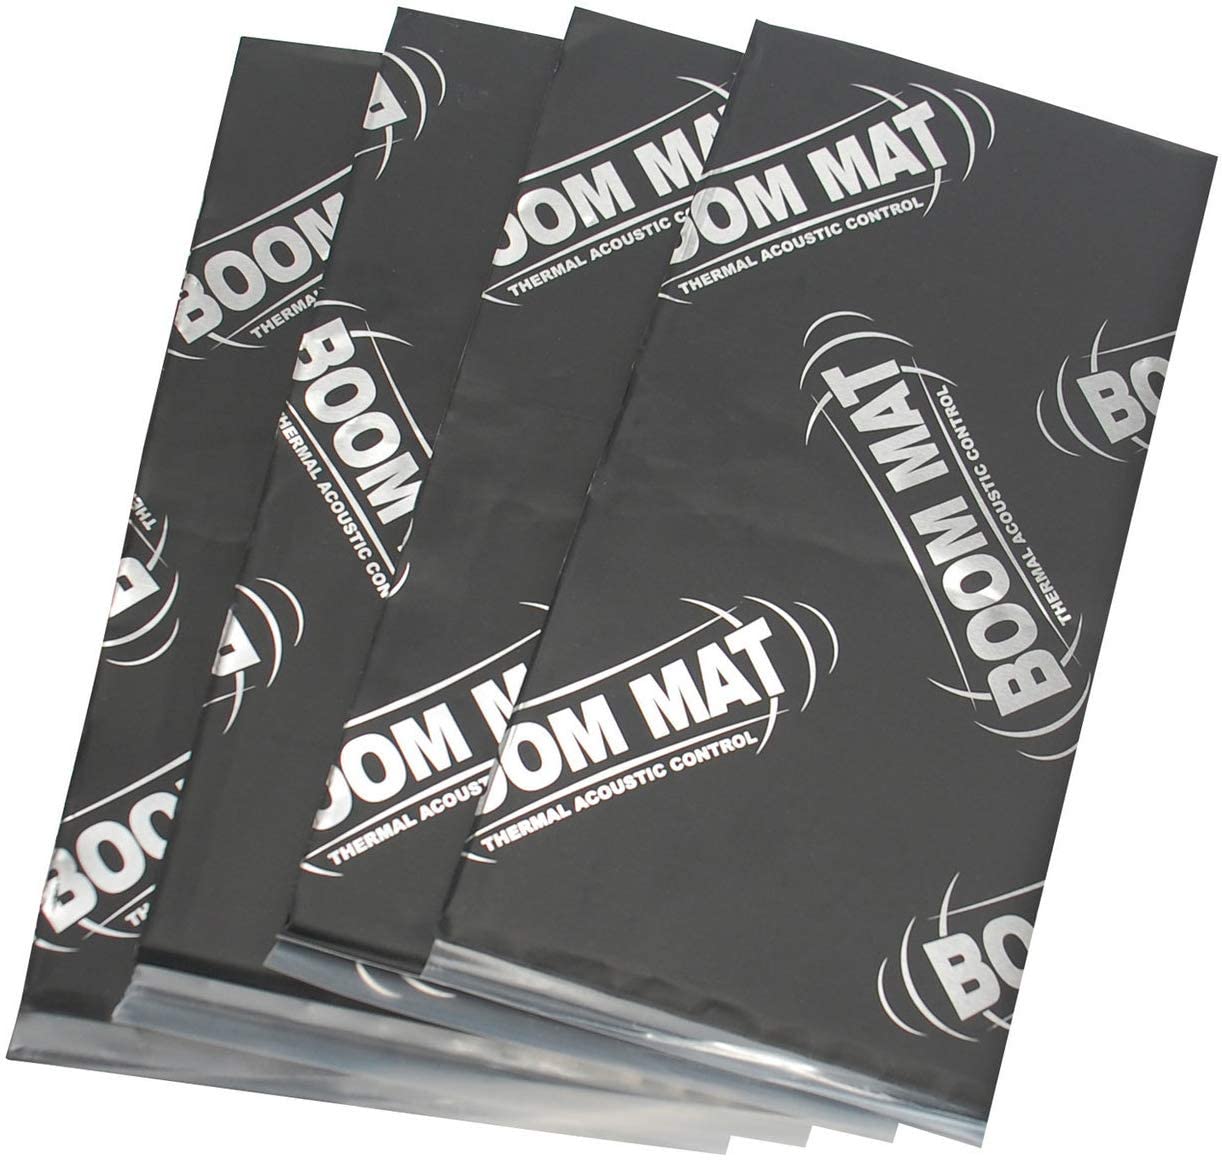 DEI Boom Mat Vibration Damping Material & Speaker Performance Kit 050199